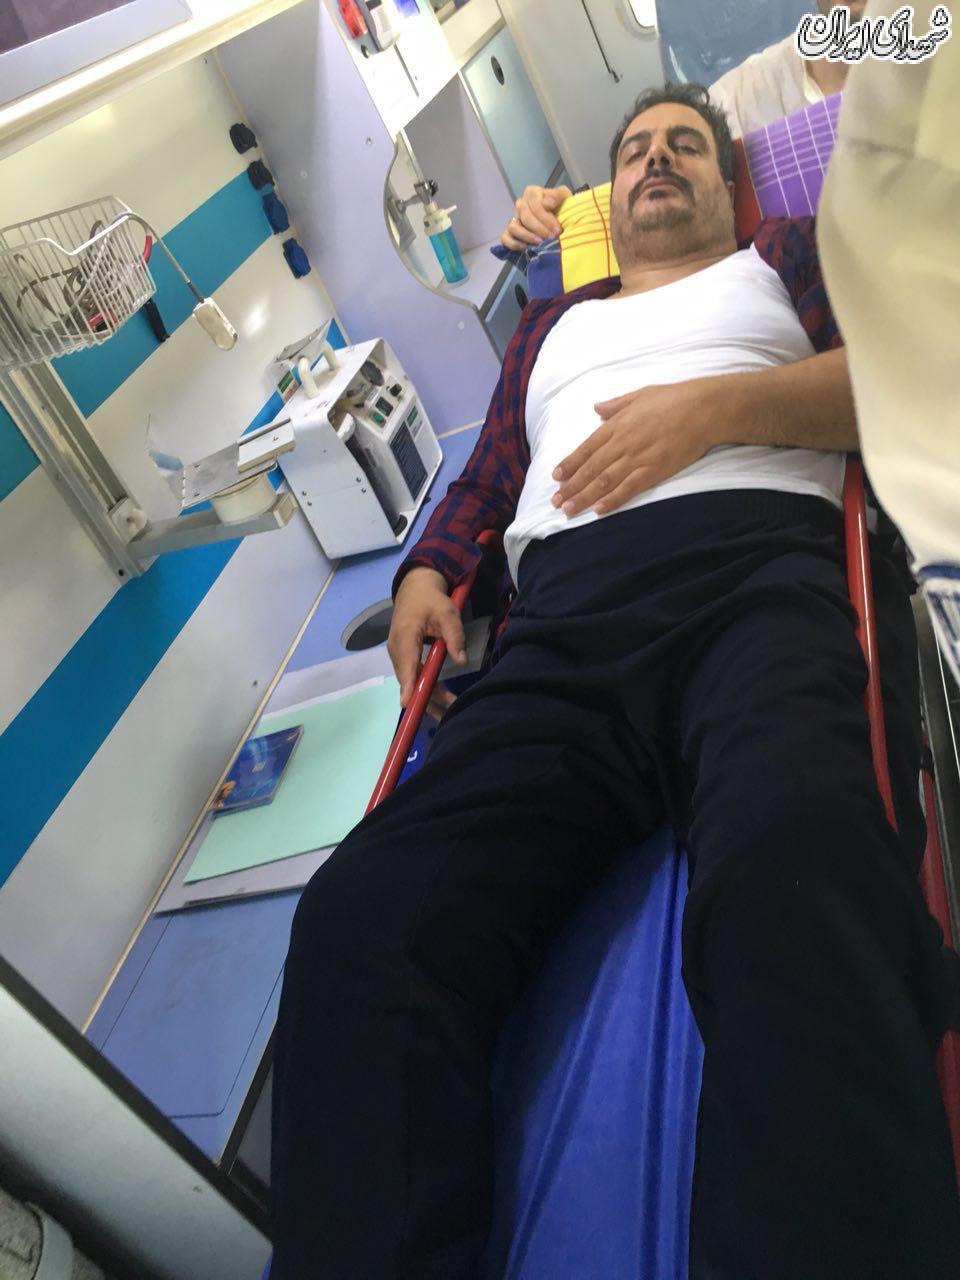 ضرب و شتم جانباز ویلچری در آسایشگاه شهید بهشتی! + عکس